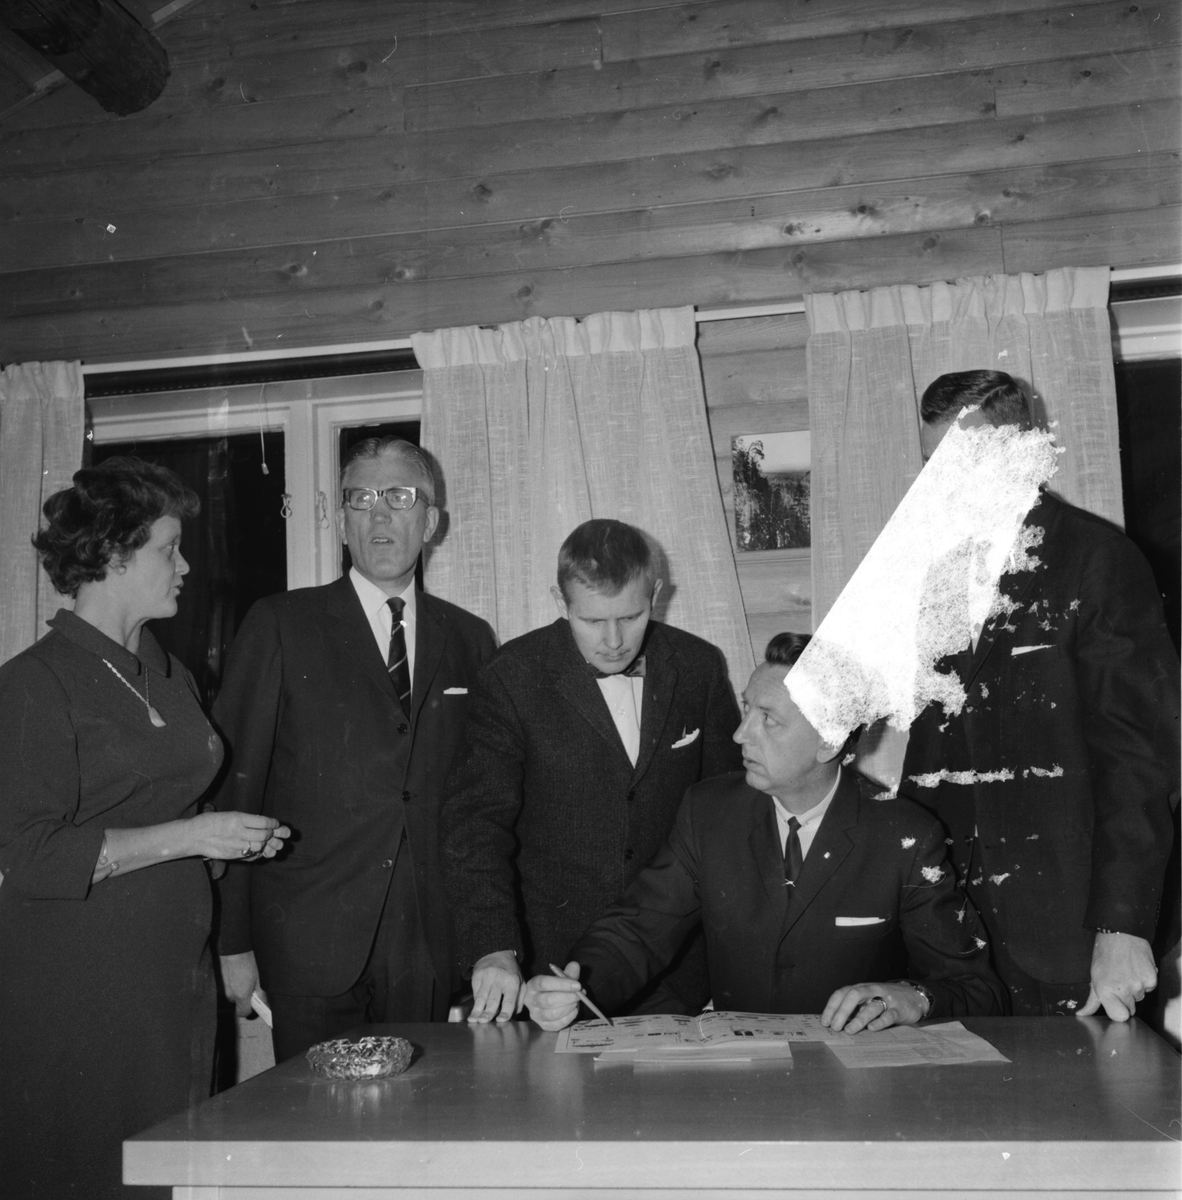 Fp.konferens på Bollegården,
13 Nov 1965